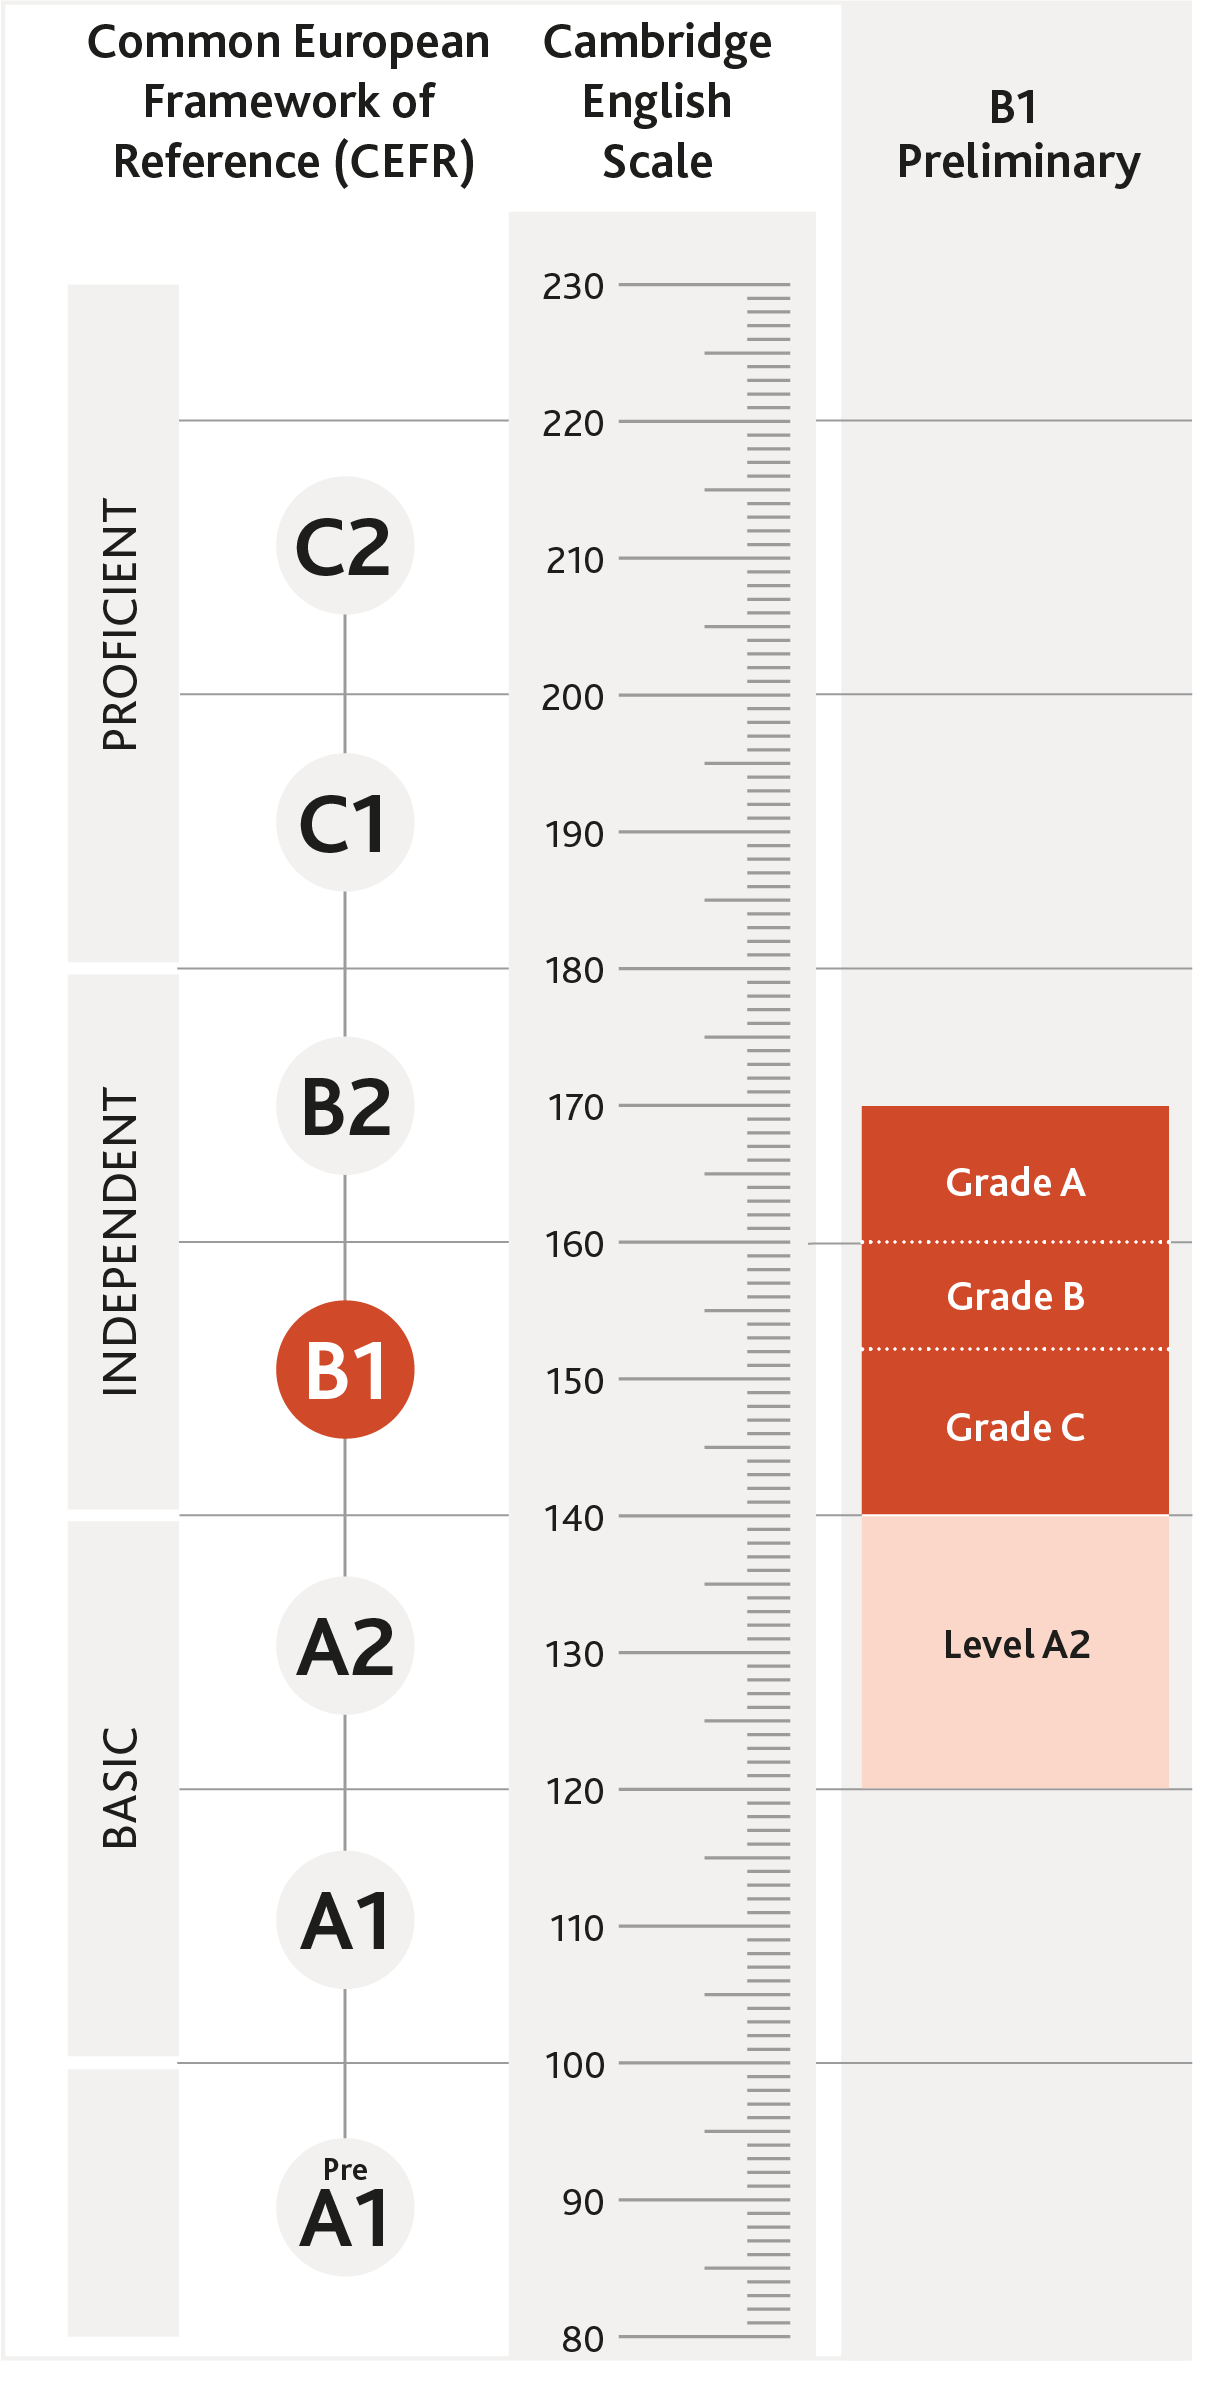 Diagramm mit B1 Preliminary im Verhältnis zu den GER-Niveaus und der Cambridge English Scale